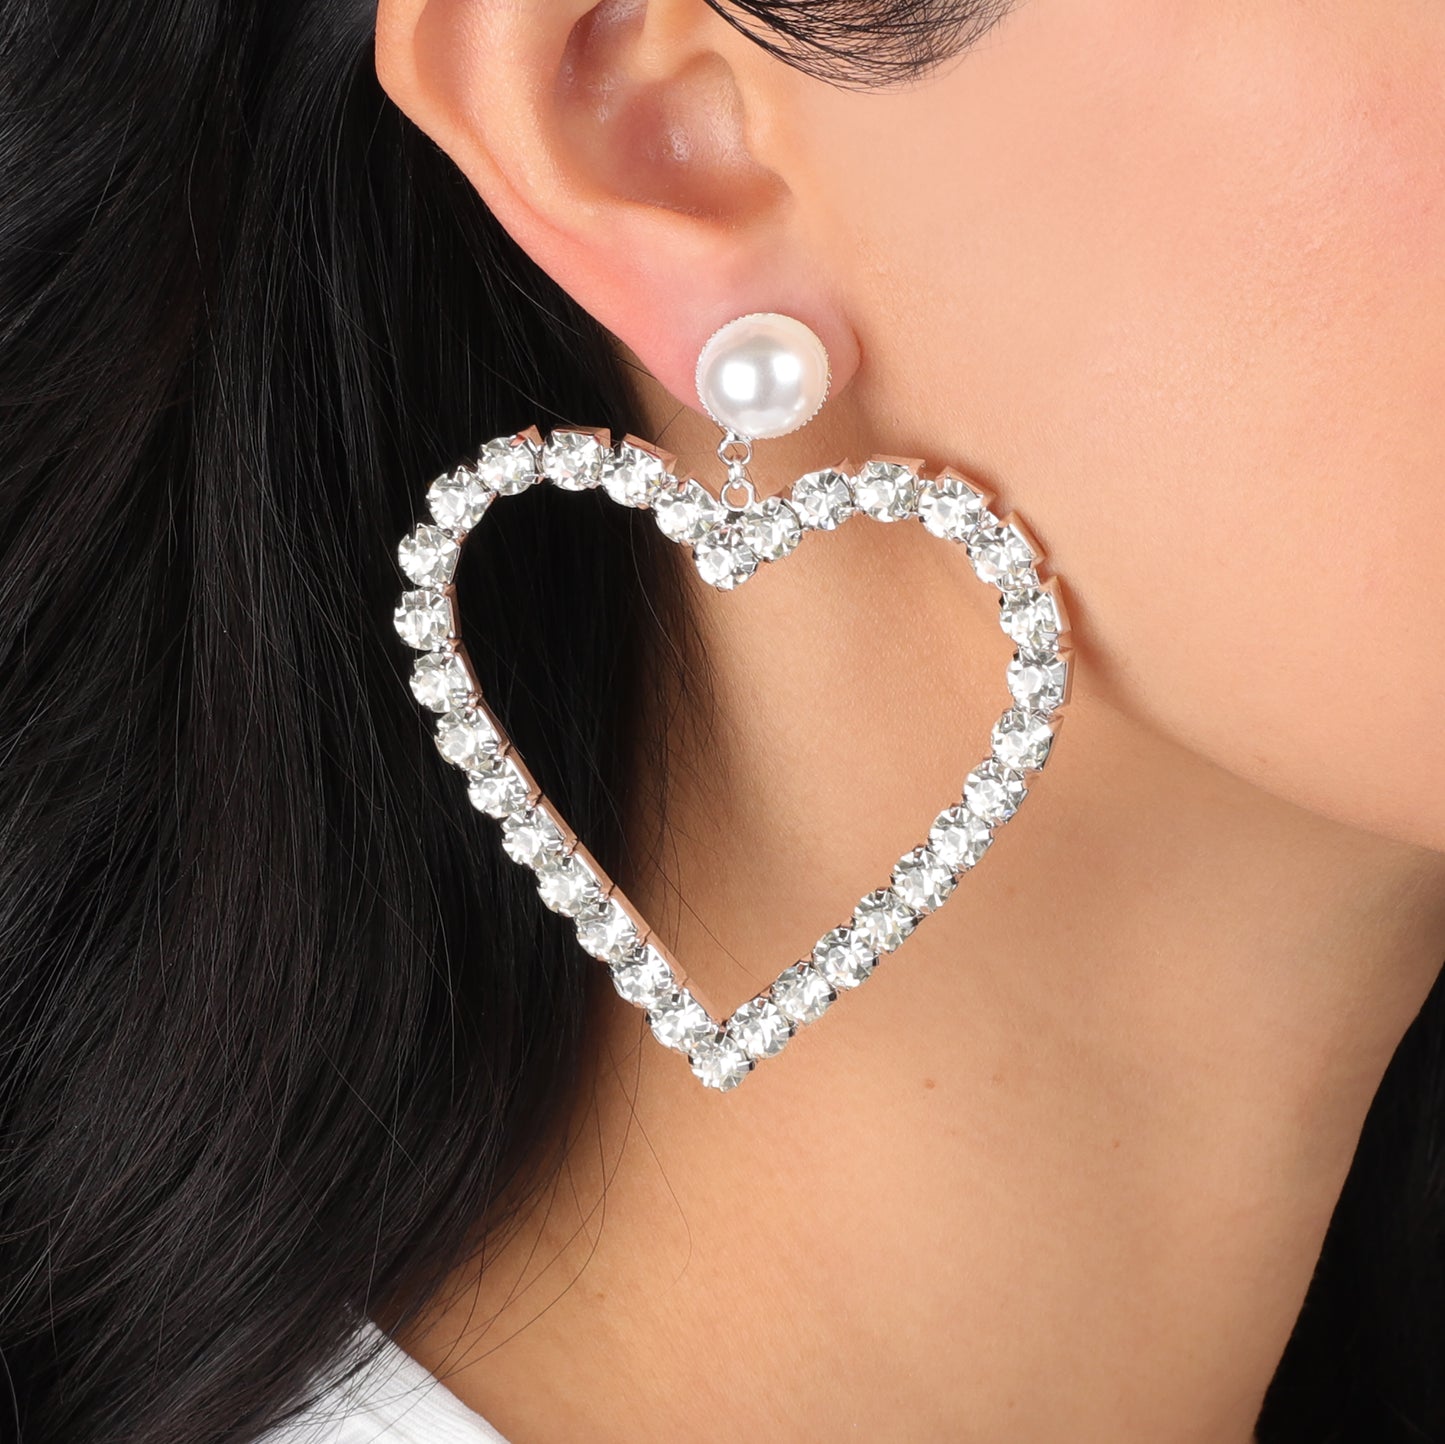 Darling Heart Post Earrings - Silver